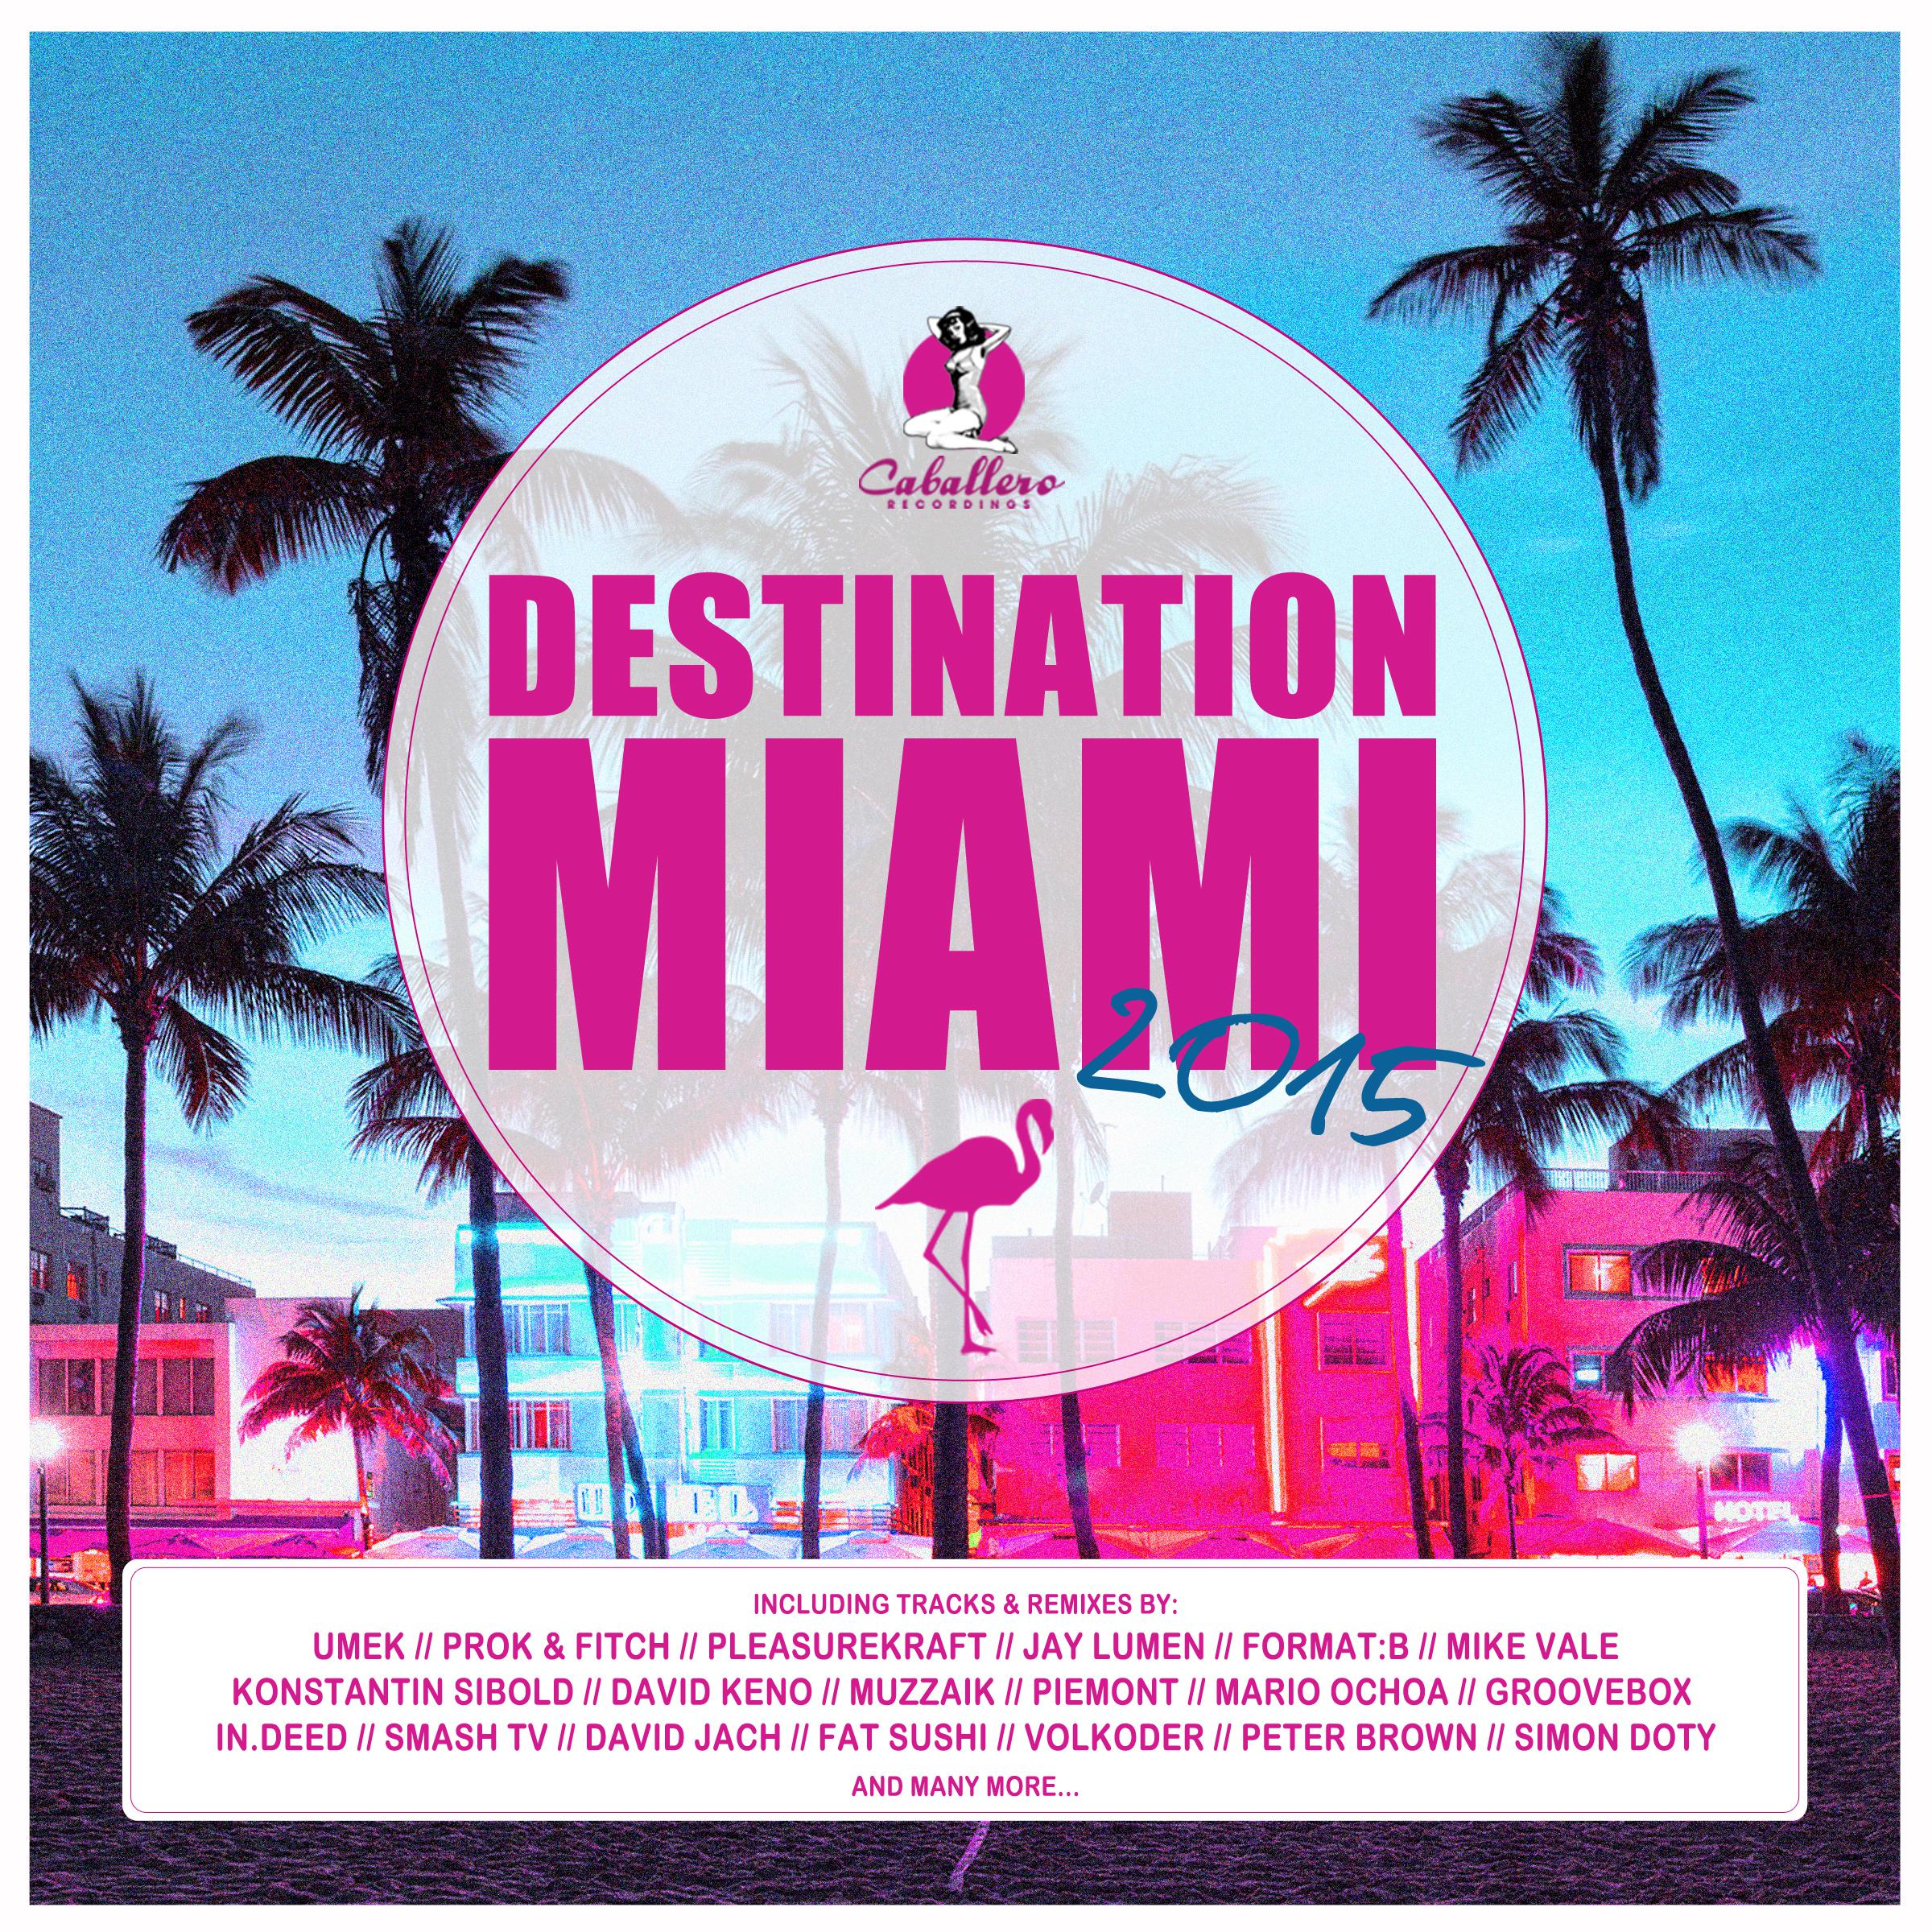 Destination: Miami 2015